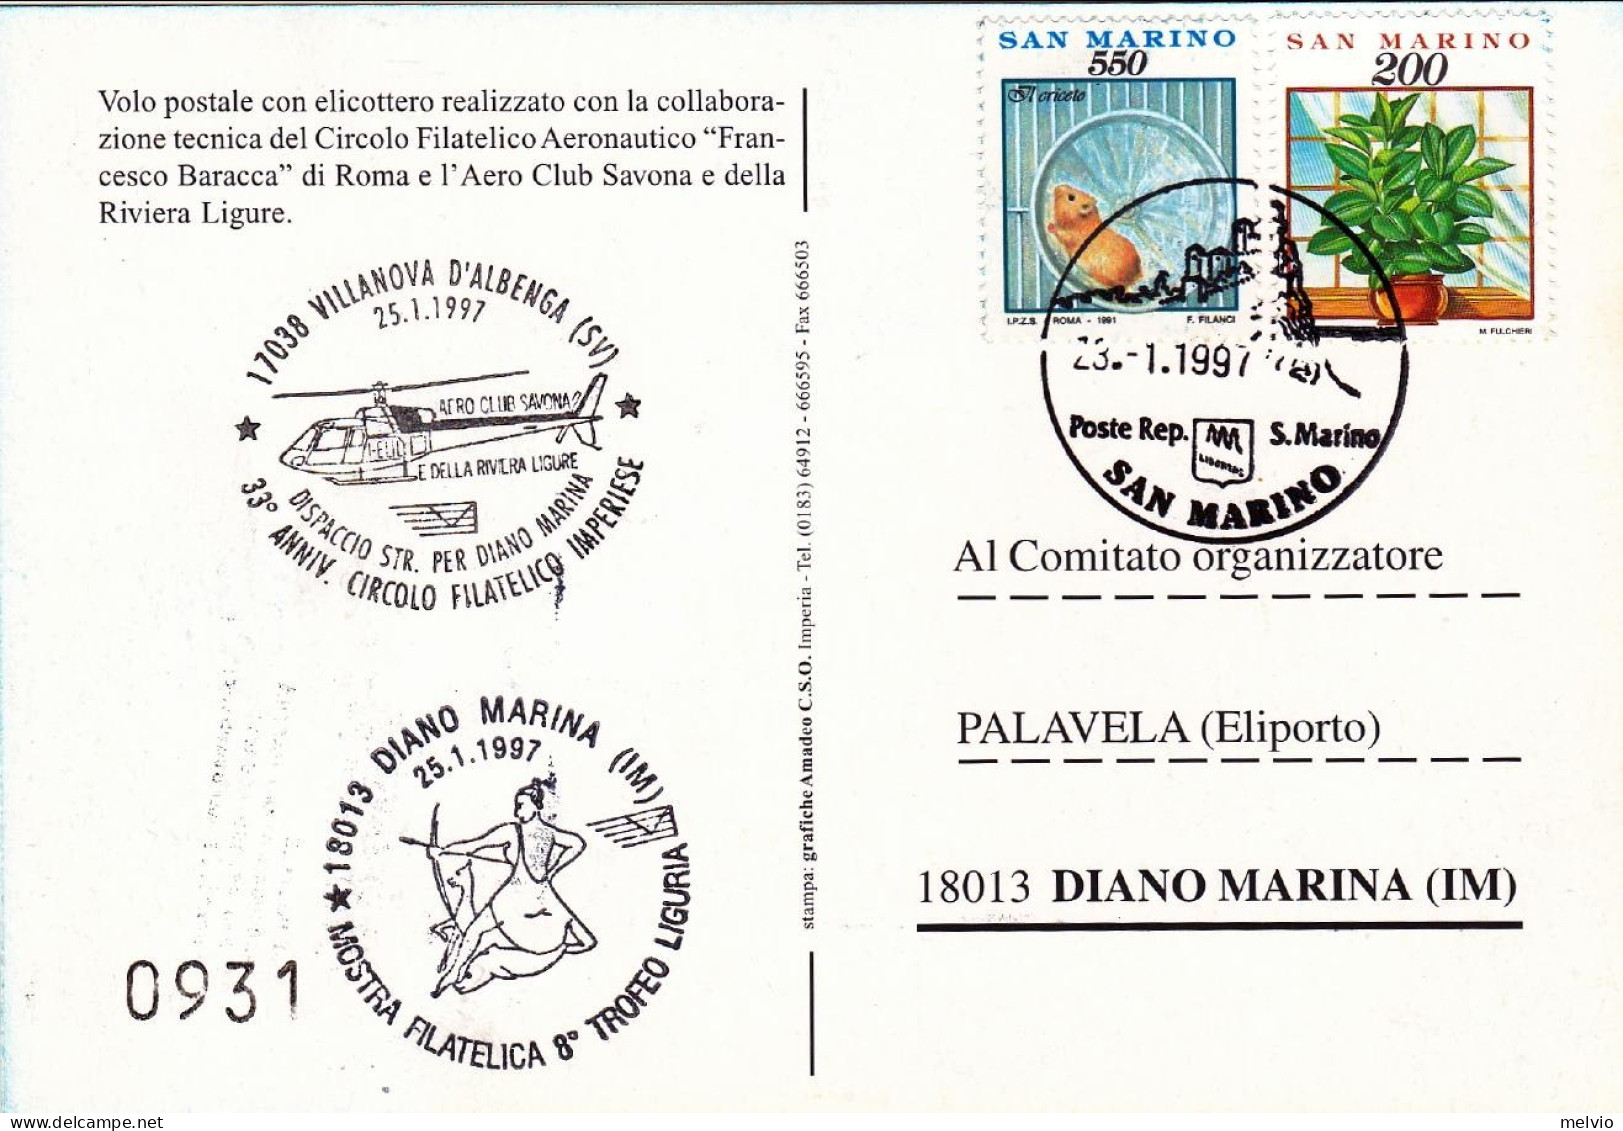 San Marino-1997 Cartolina Numerata Volo Postale Con Elicottero Villanova D'Alben - Airmail